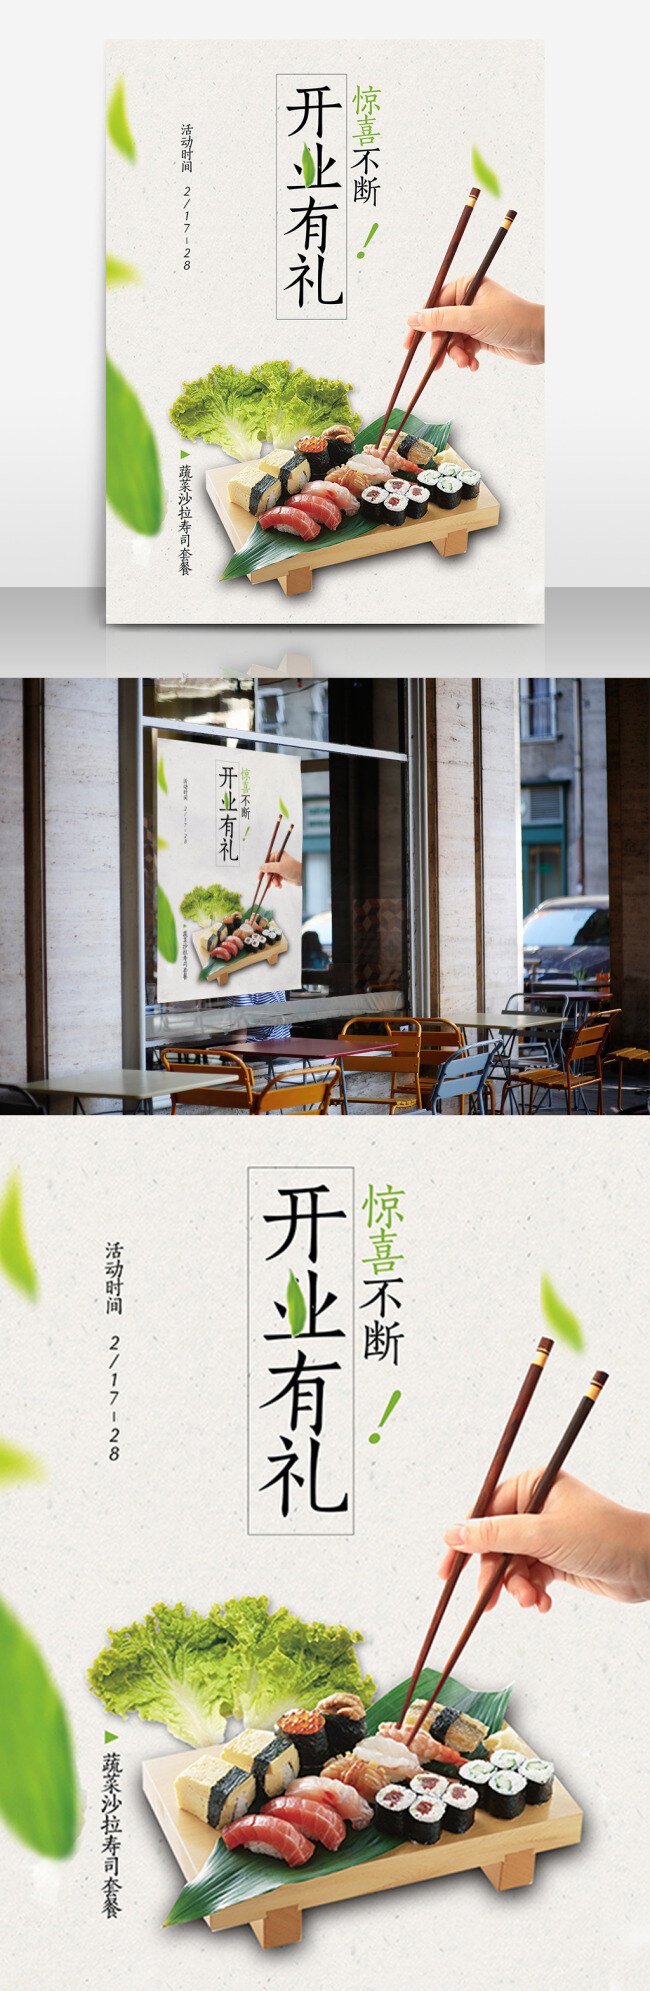 开业 寿司 美食 惊喜 不断 海报 高清 开业有礼海报 寿司美食 惊喜不断 高清psd 简约 绿色